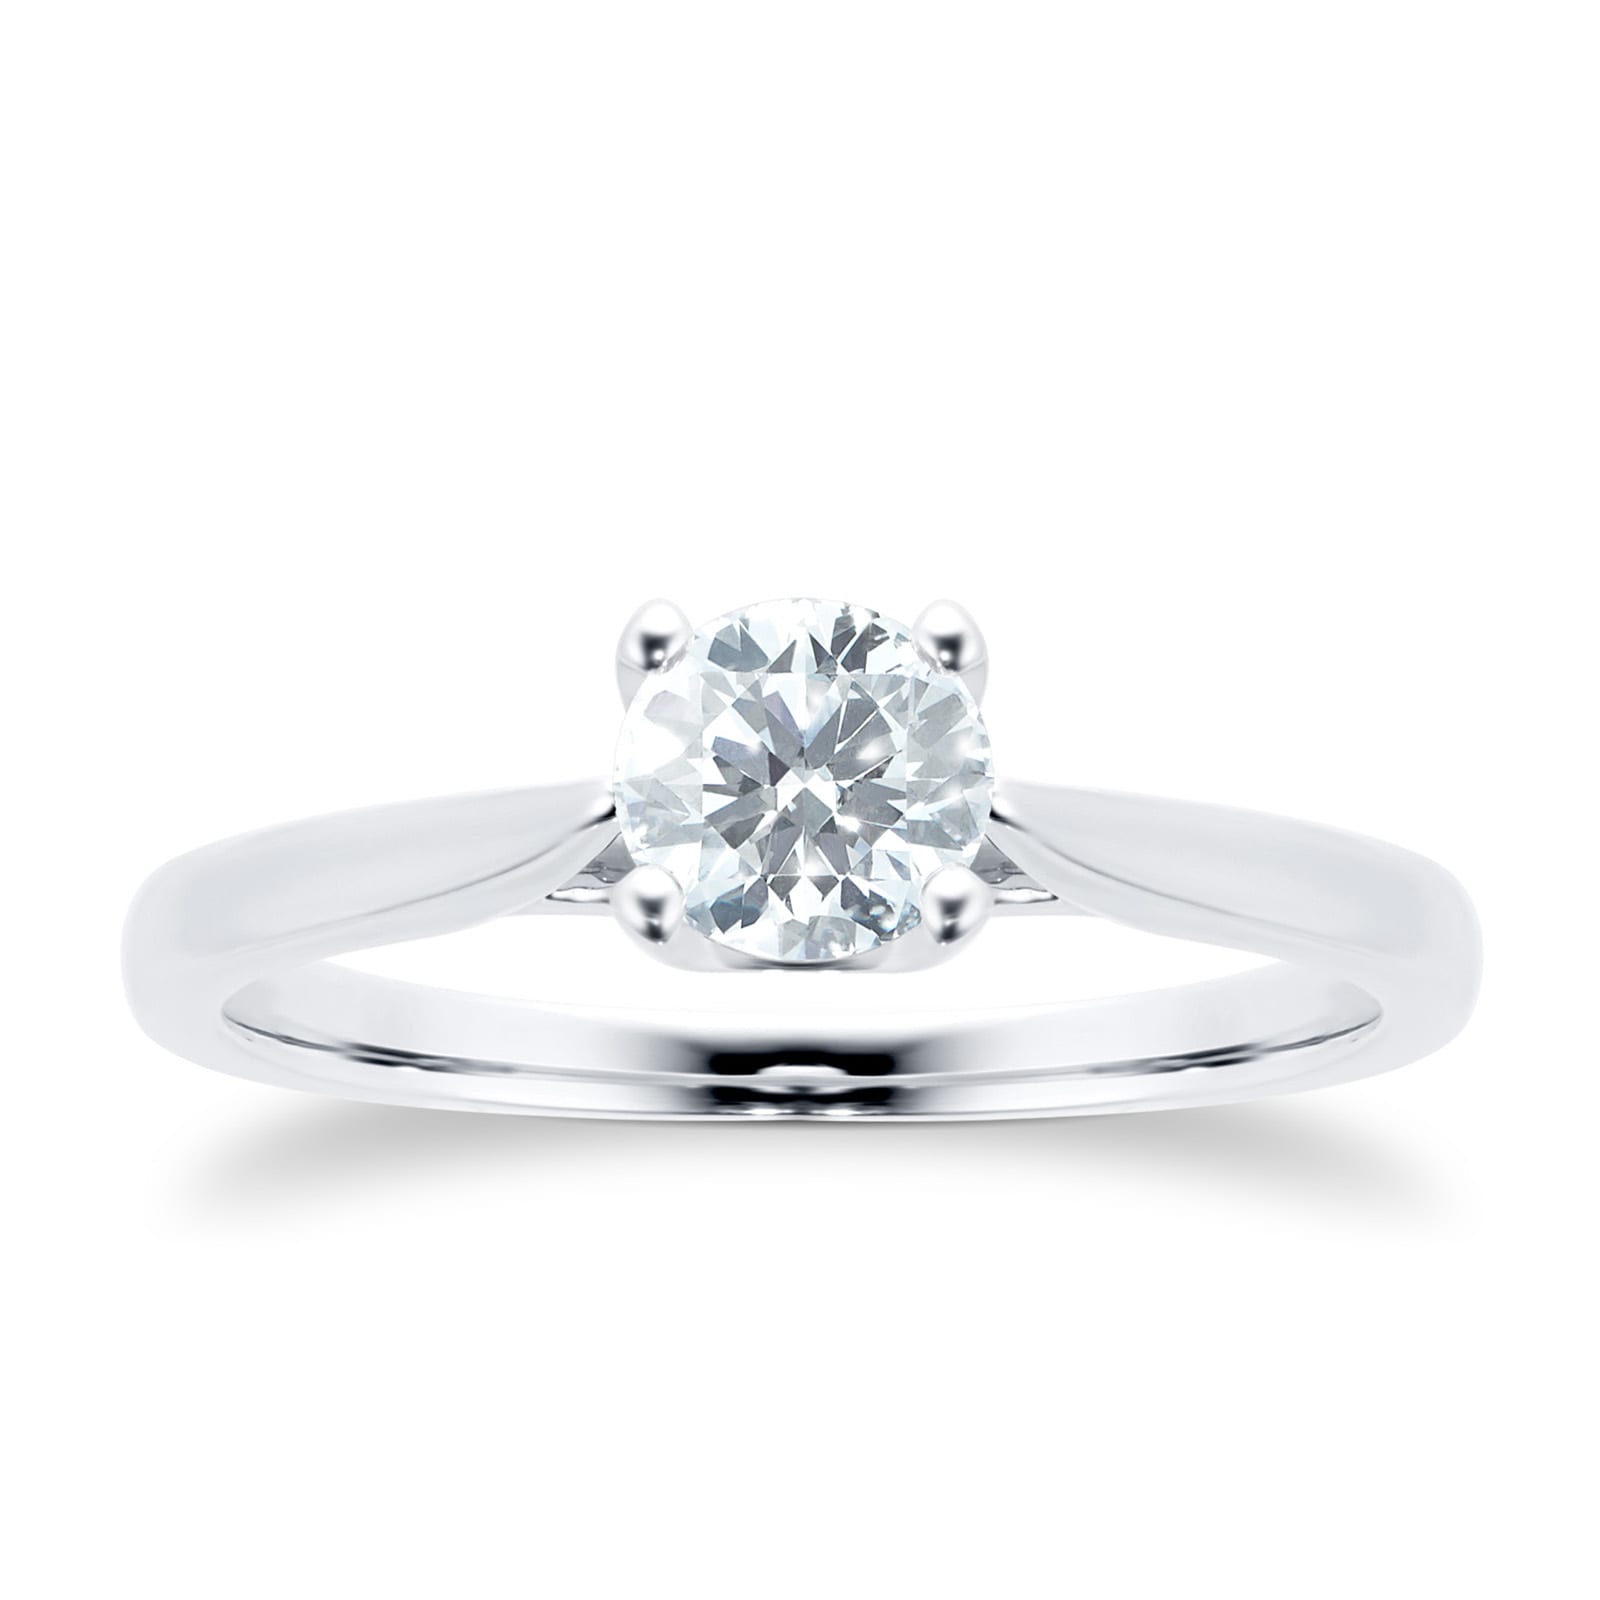 Platinum Brilliant Cut 0.50ct Goldsmiths Brightest Diamond Ring - Ring Size Q